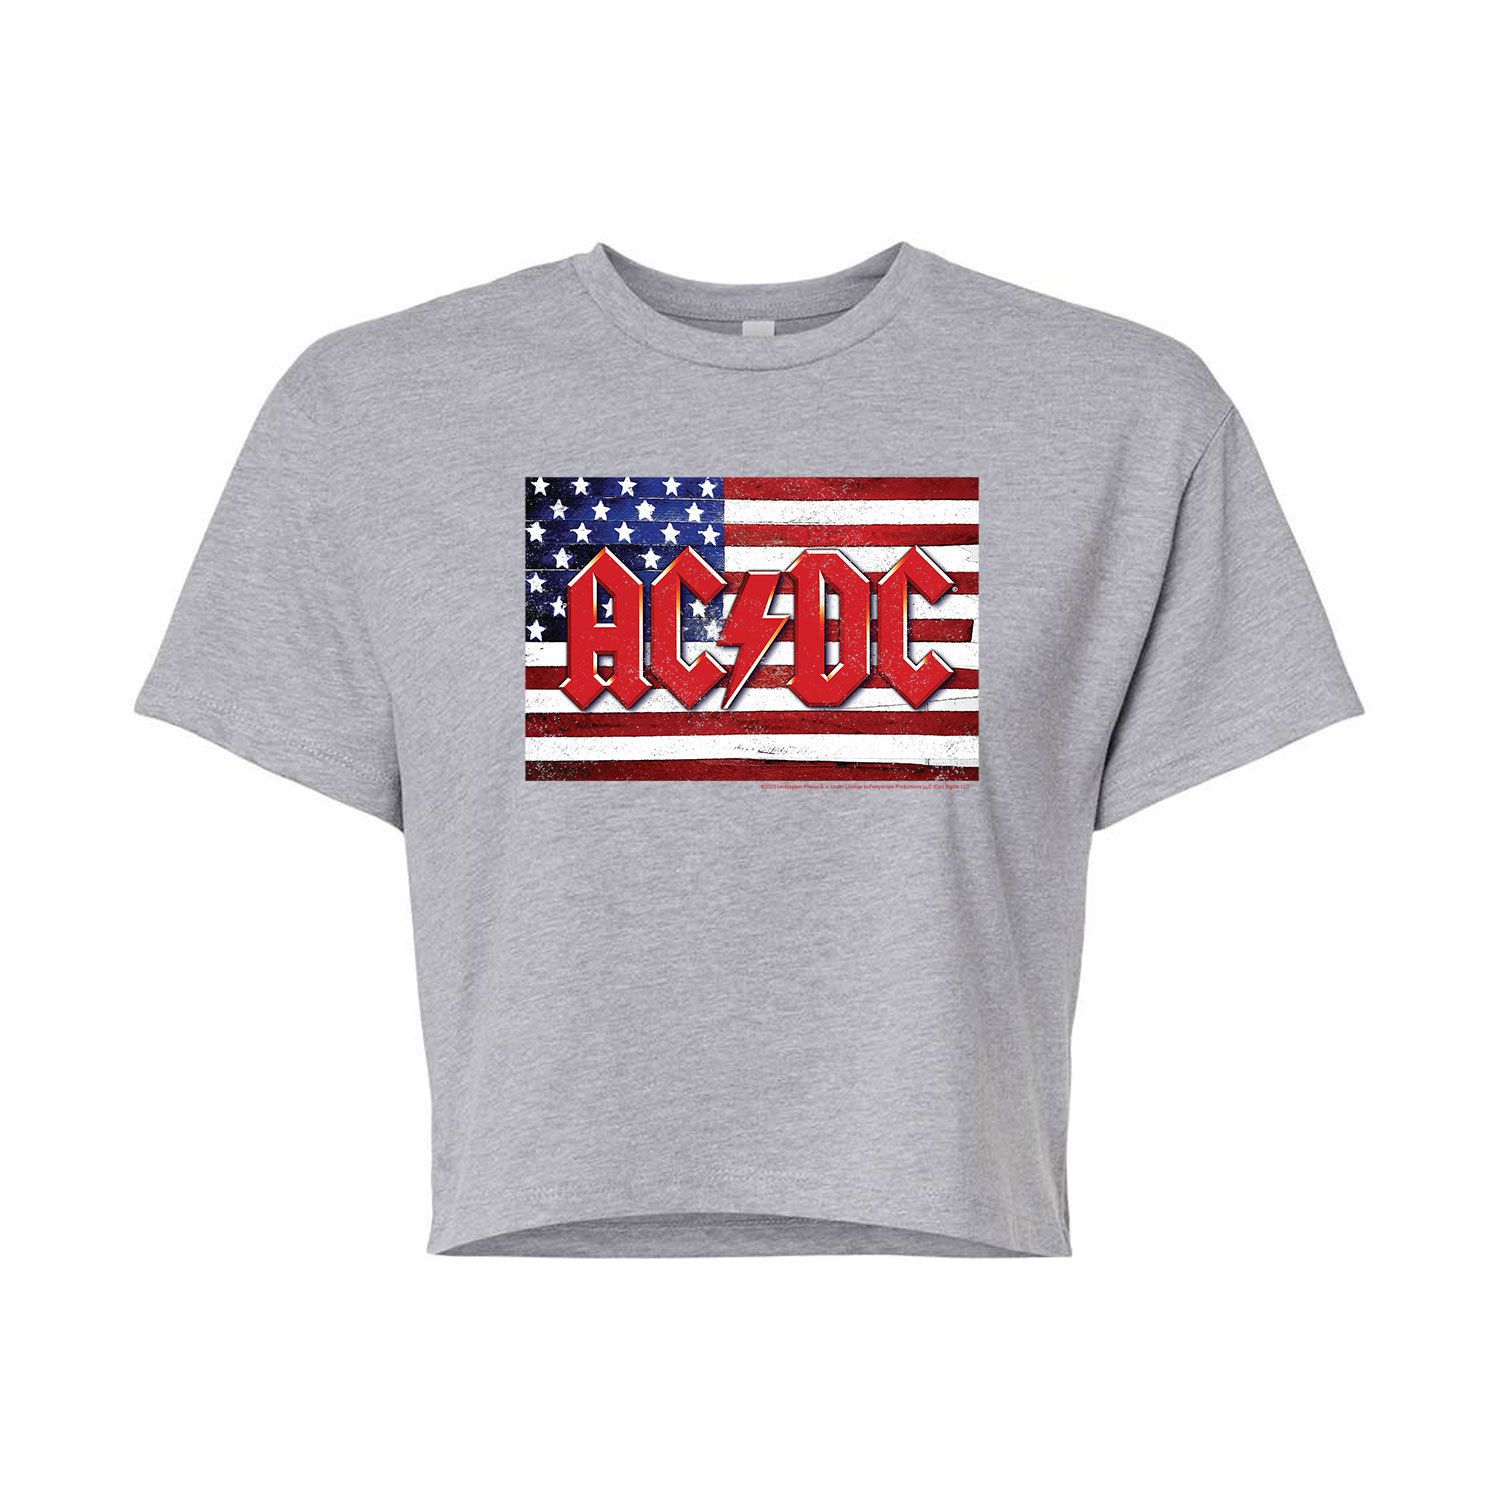 Укороченная футболка с графическим рисунком AC/DC для юниоров с американским флагом Licensed Character, серый укороченная худи с графическим рисунком ac dc patriotic для юниоров licensed character